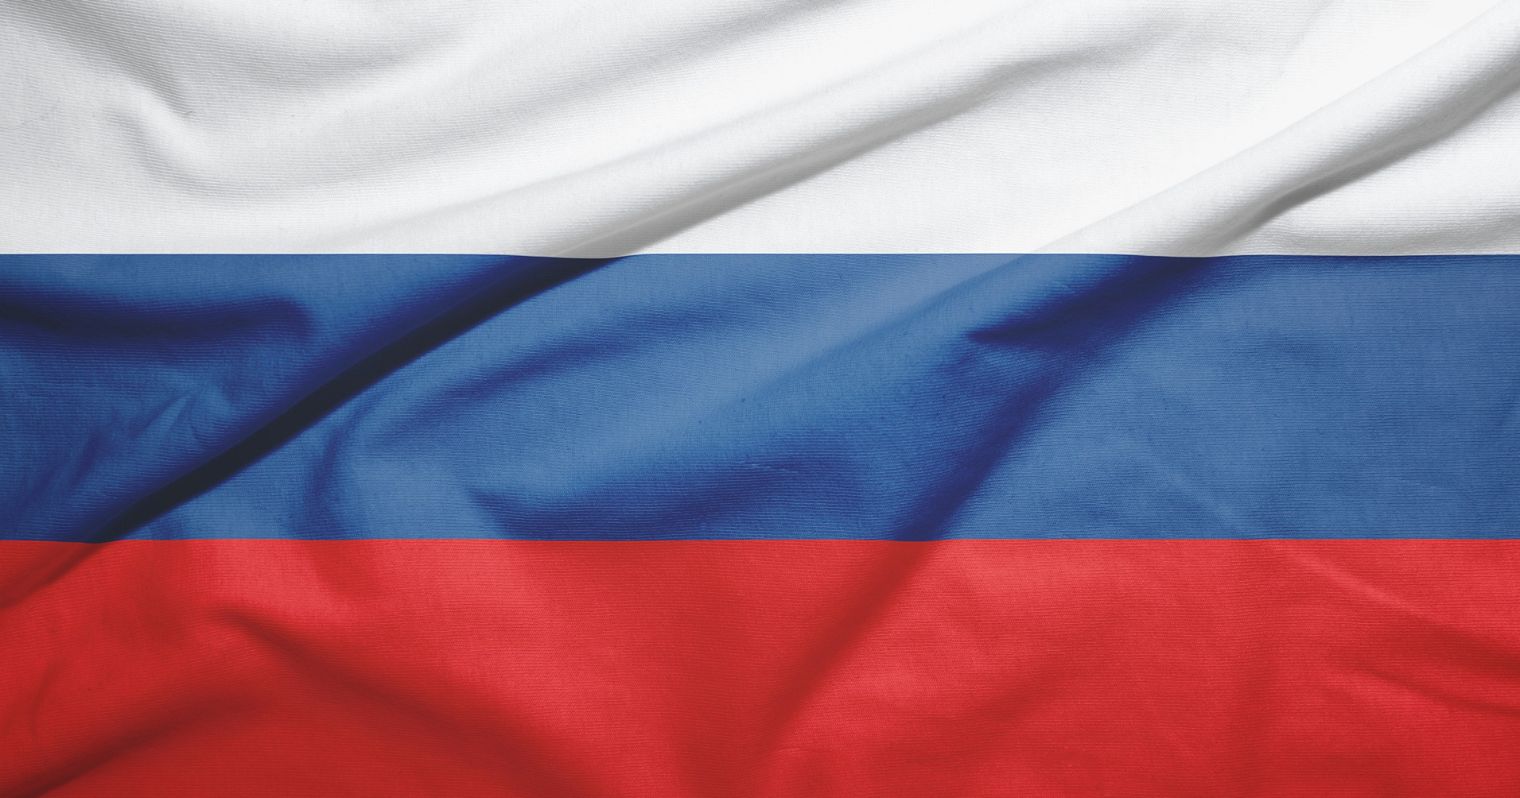 Oroszország zászlója